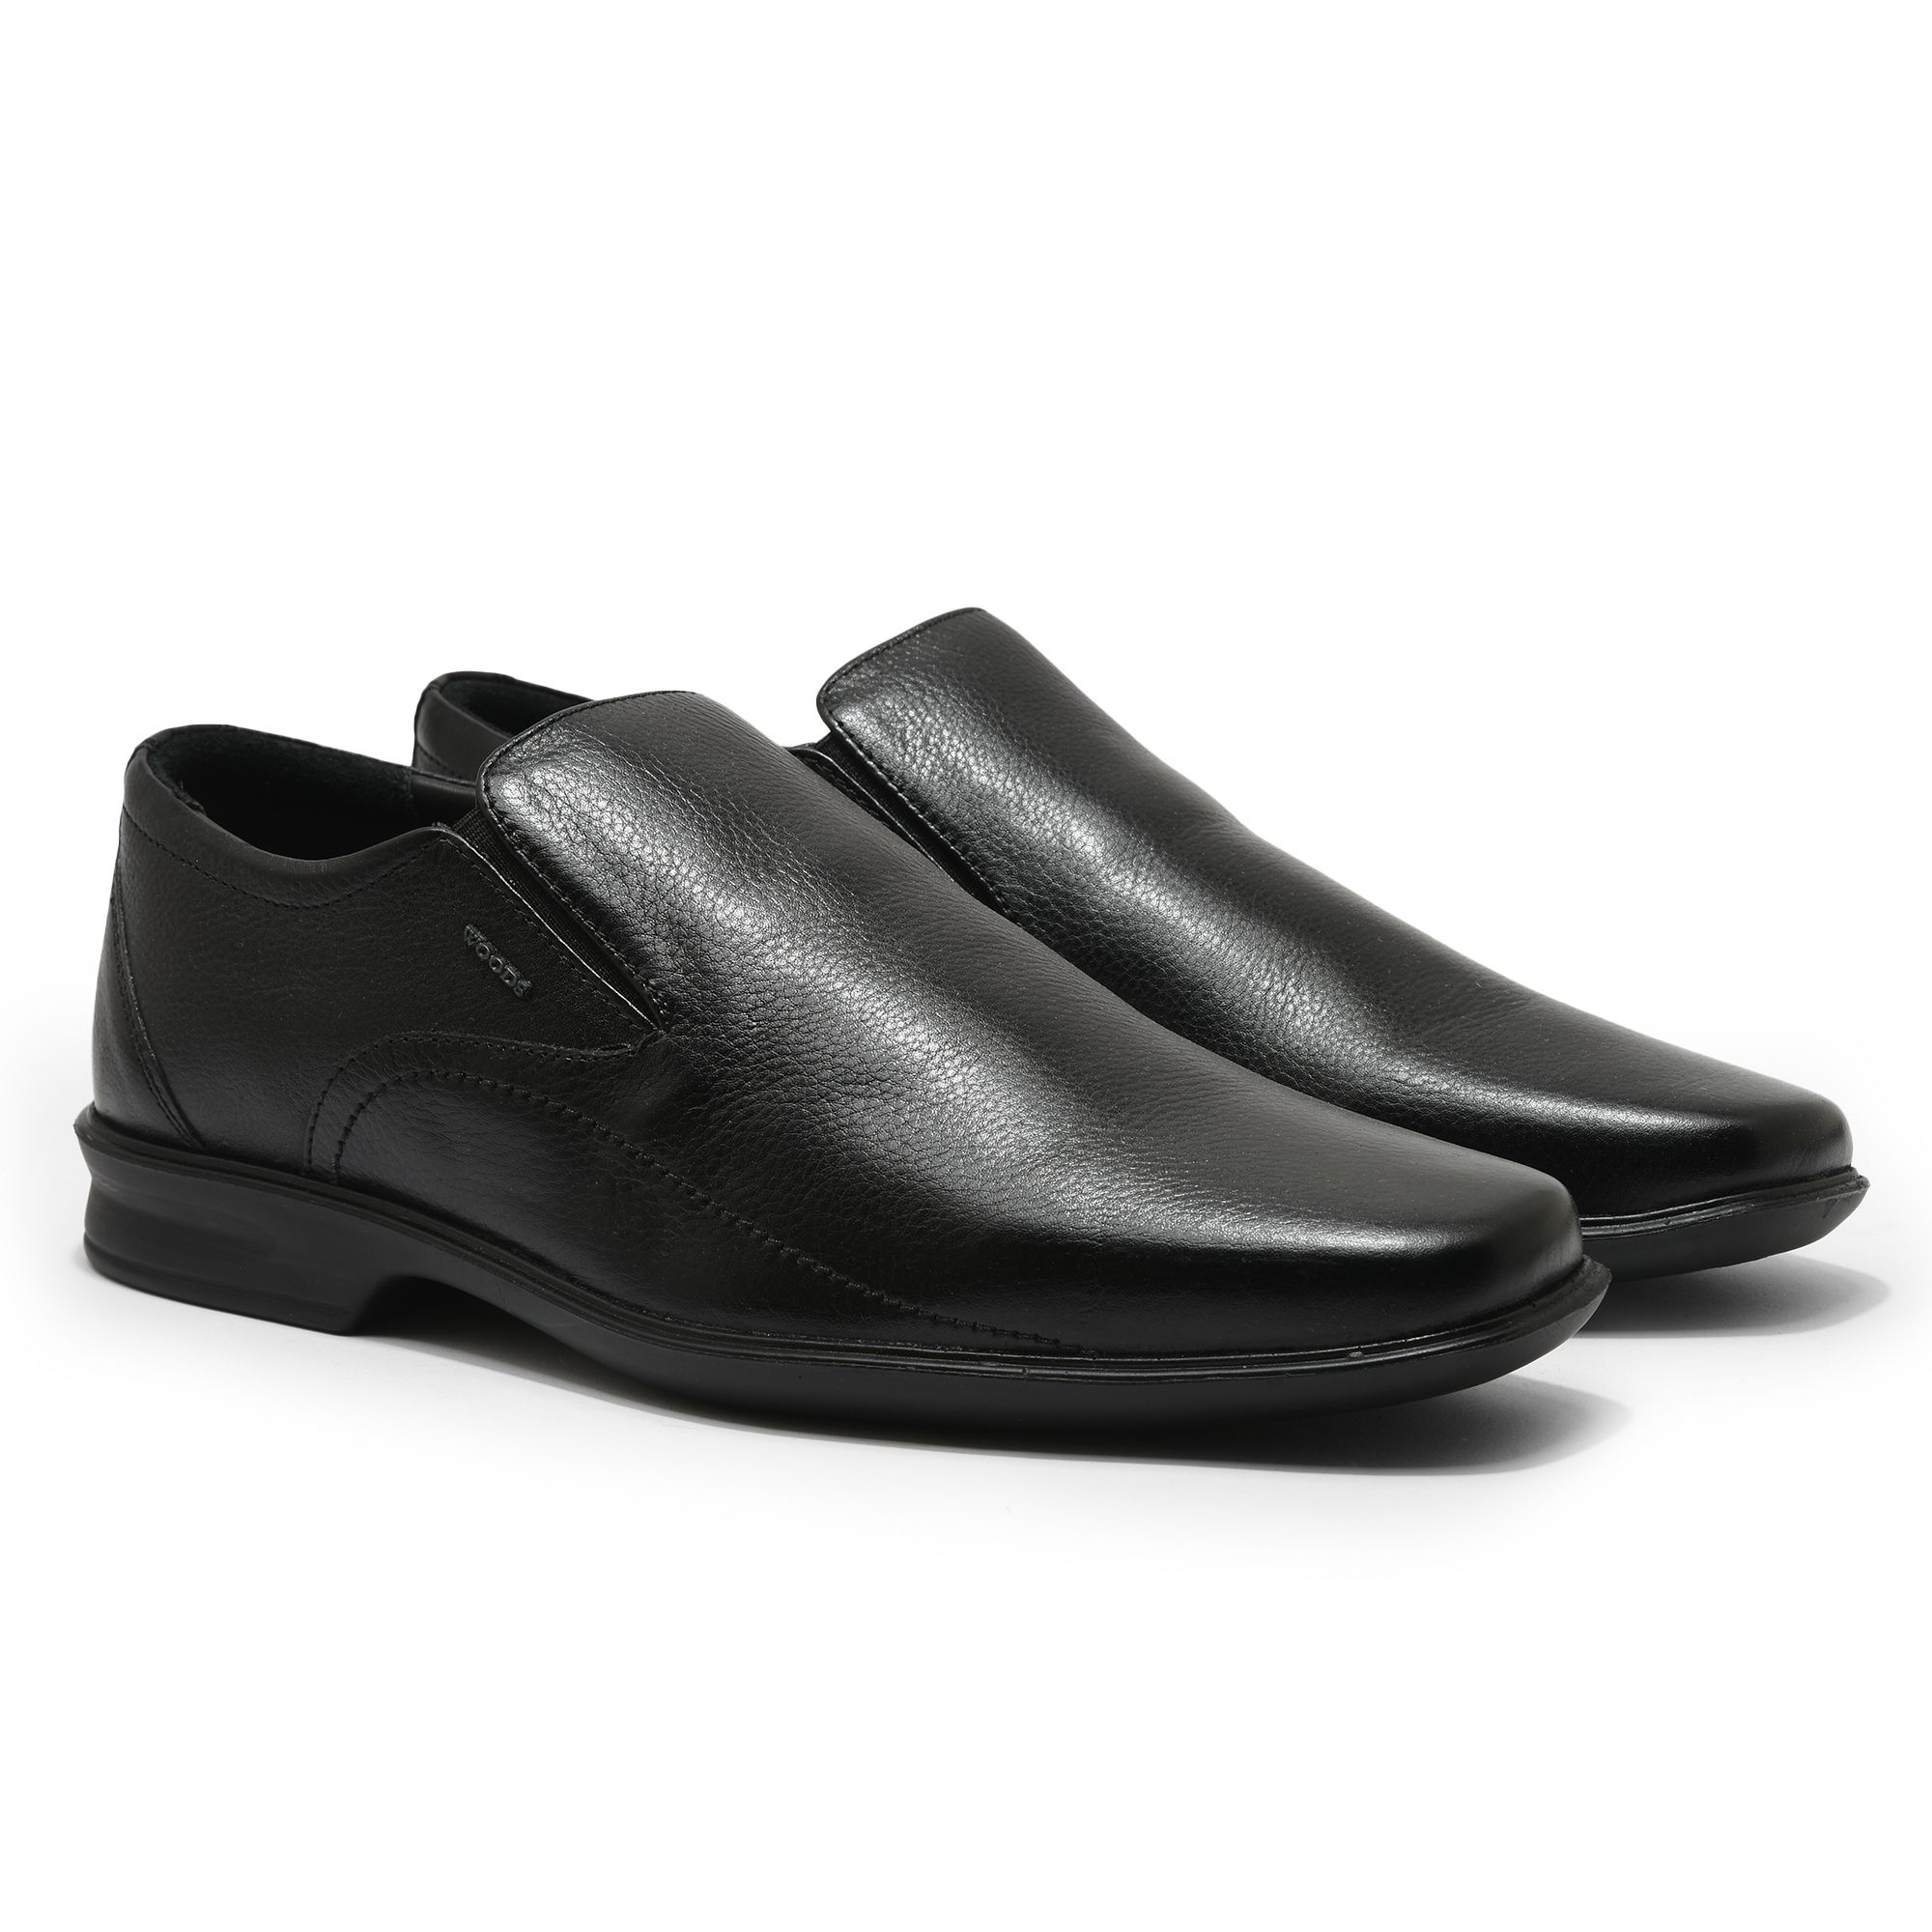 Black formal shoes for men